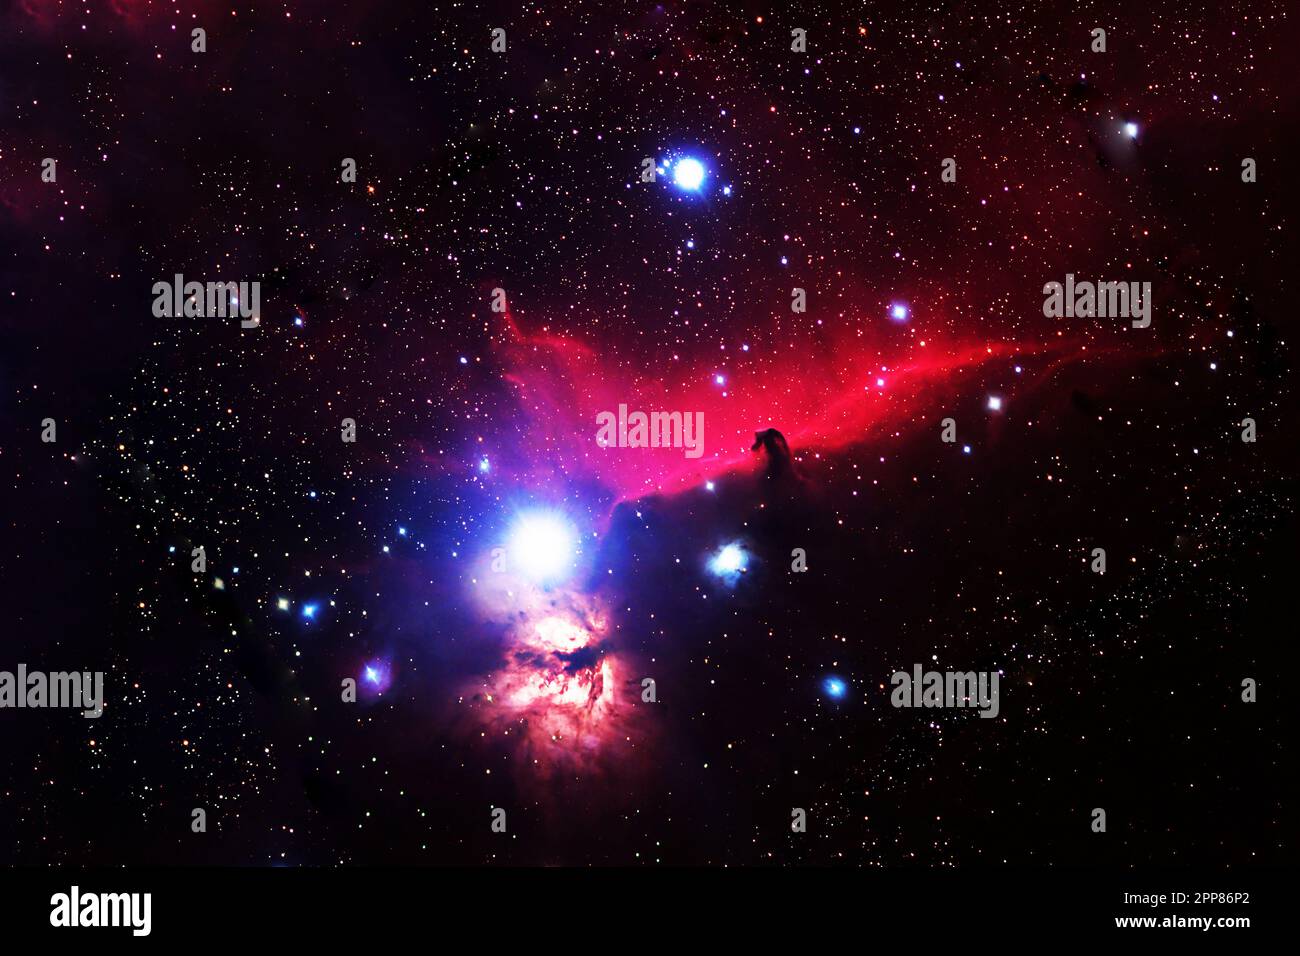 Ein kosmischer Nebel, der dem Kopf eines Pferdes ähnelt. Elemente dieses Bildes lieferten die NASA. Stockfoto